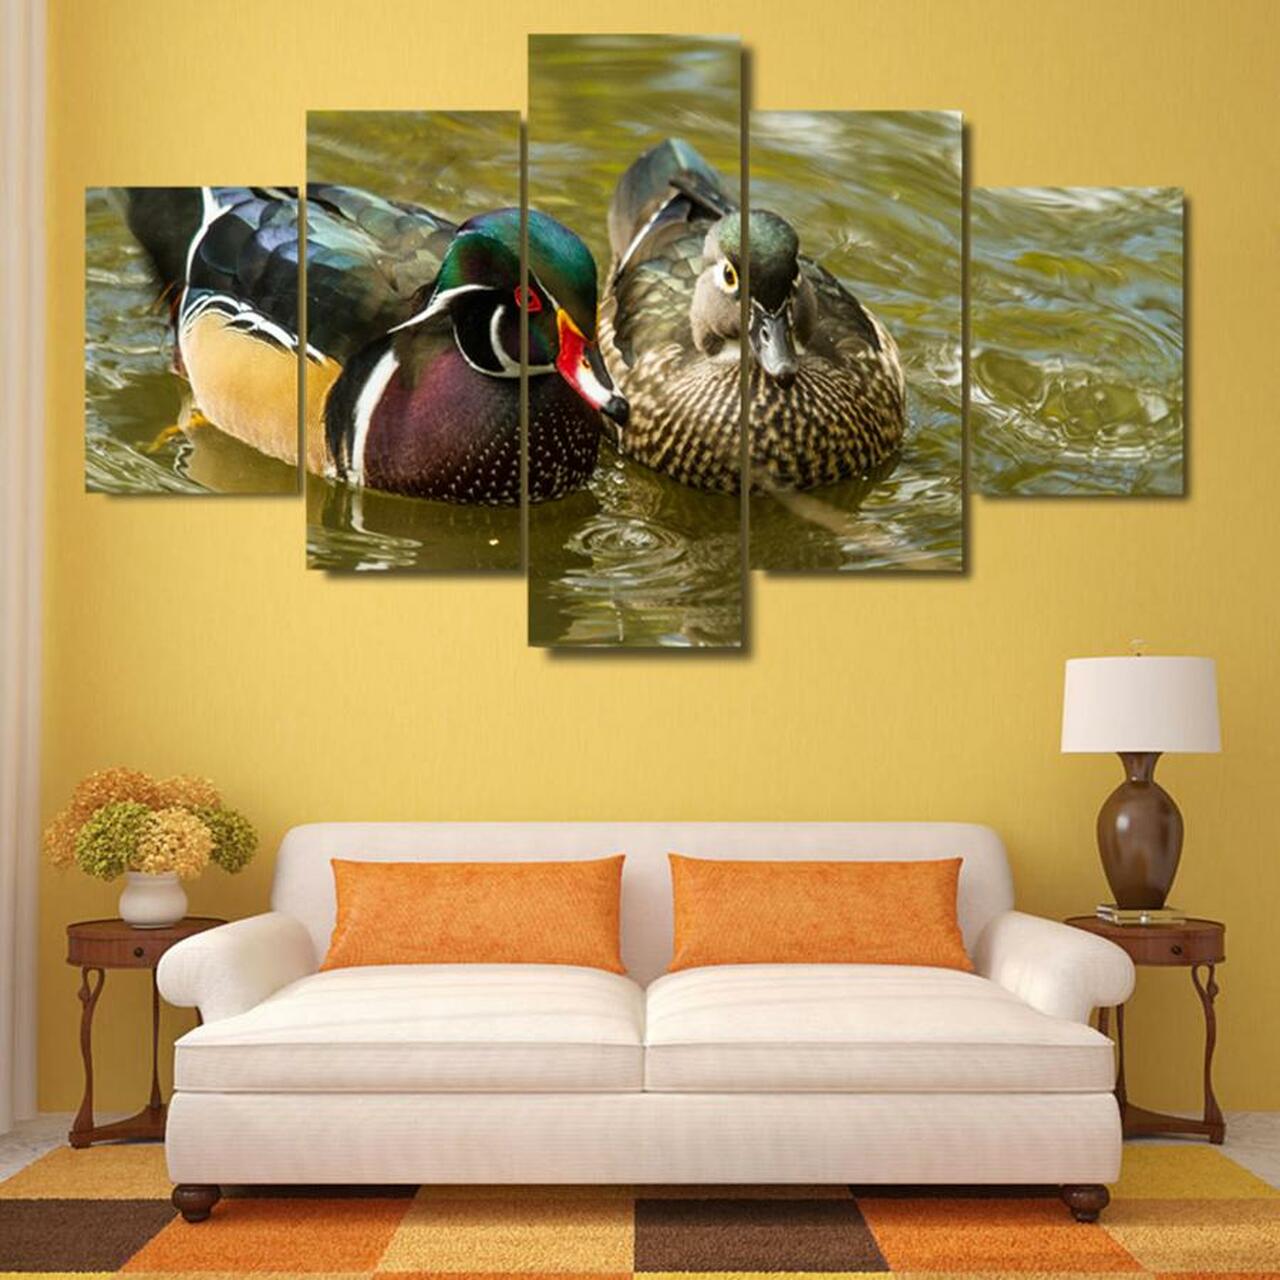 mandarin ducks 5 pices peinture sur toile impression sur toile toile art pour la dcoration intrieureuytbj